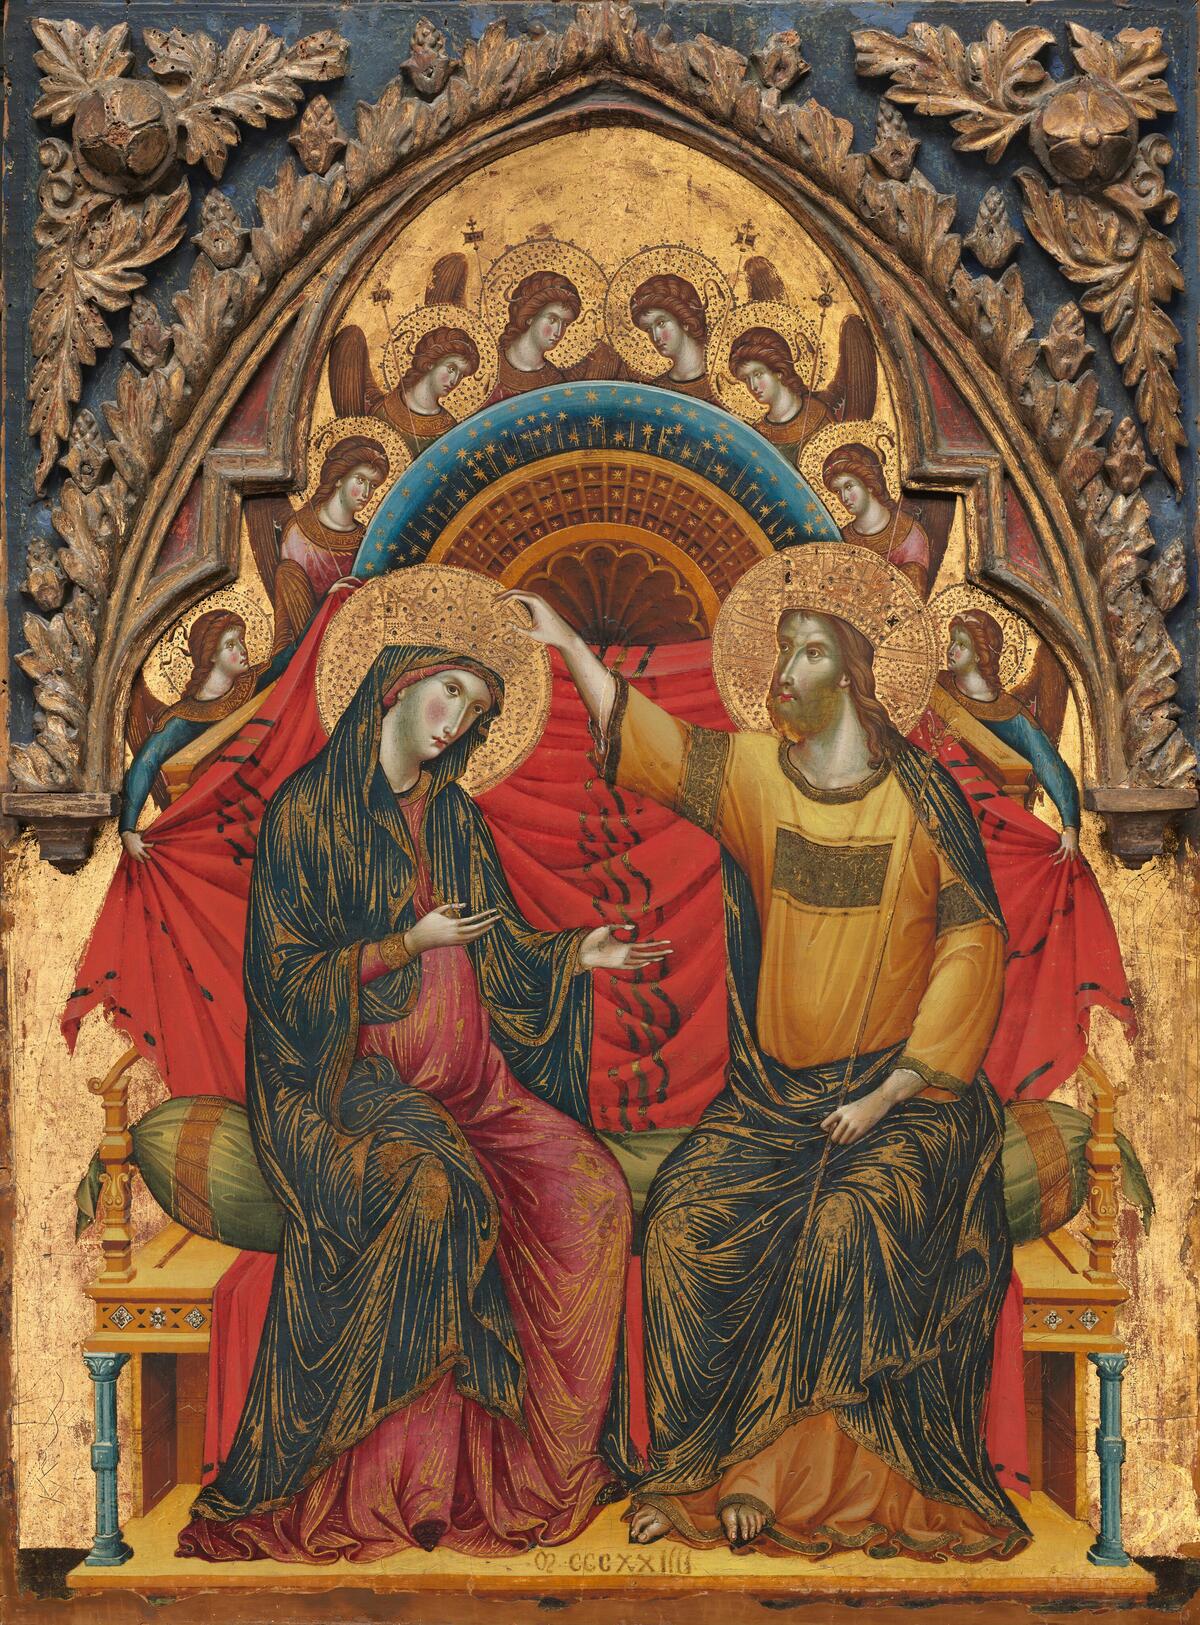 En dekorativ målning med förgyld bakgrund. I mitten sitter en kvinna och en man som bär glorialiknande kronor på huvudet. Mannen håller sin hand mot kvinnans krona.